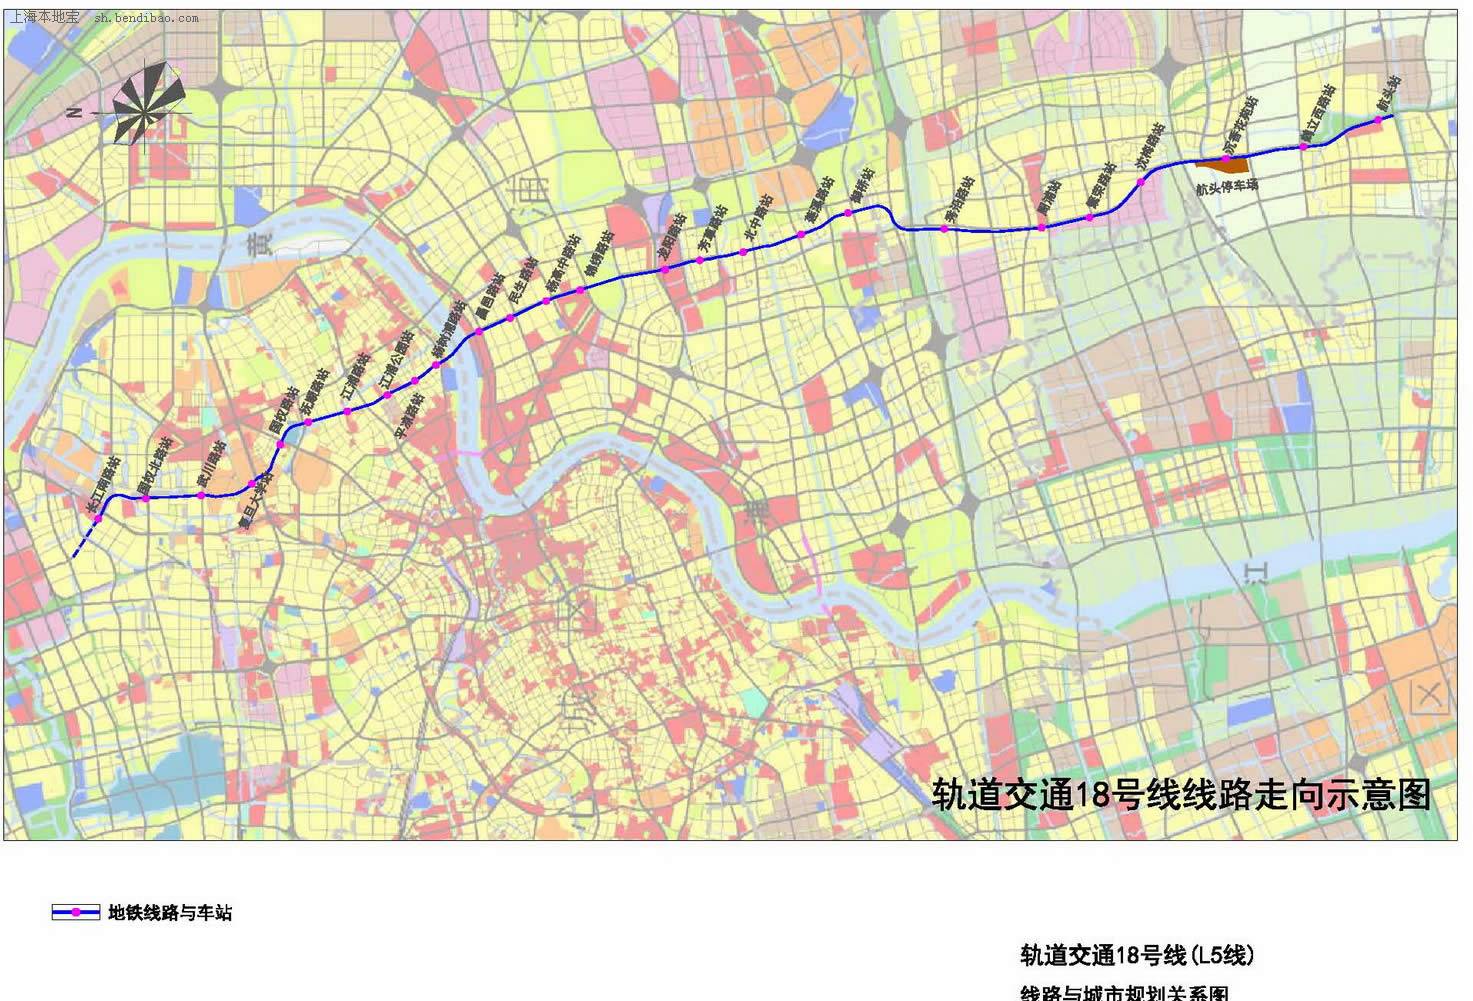 上海地铁18号线运行线路示意图